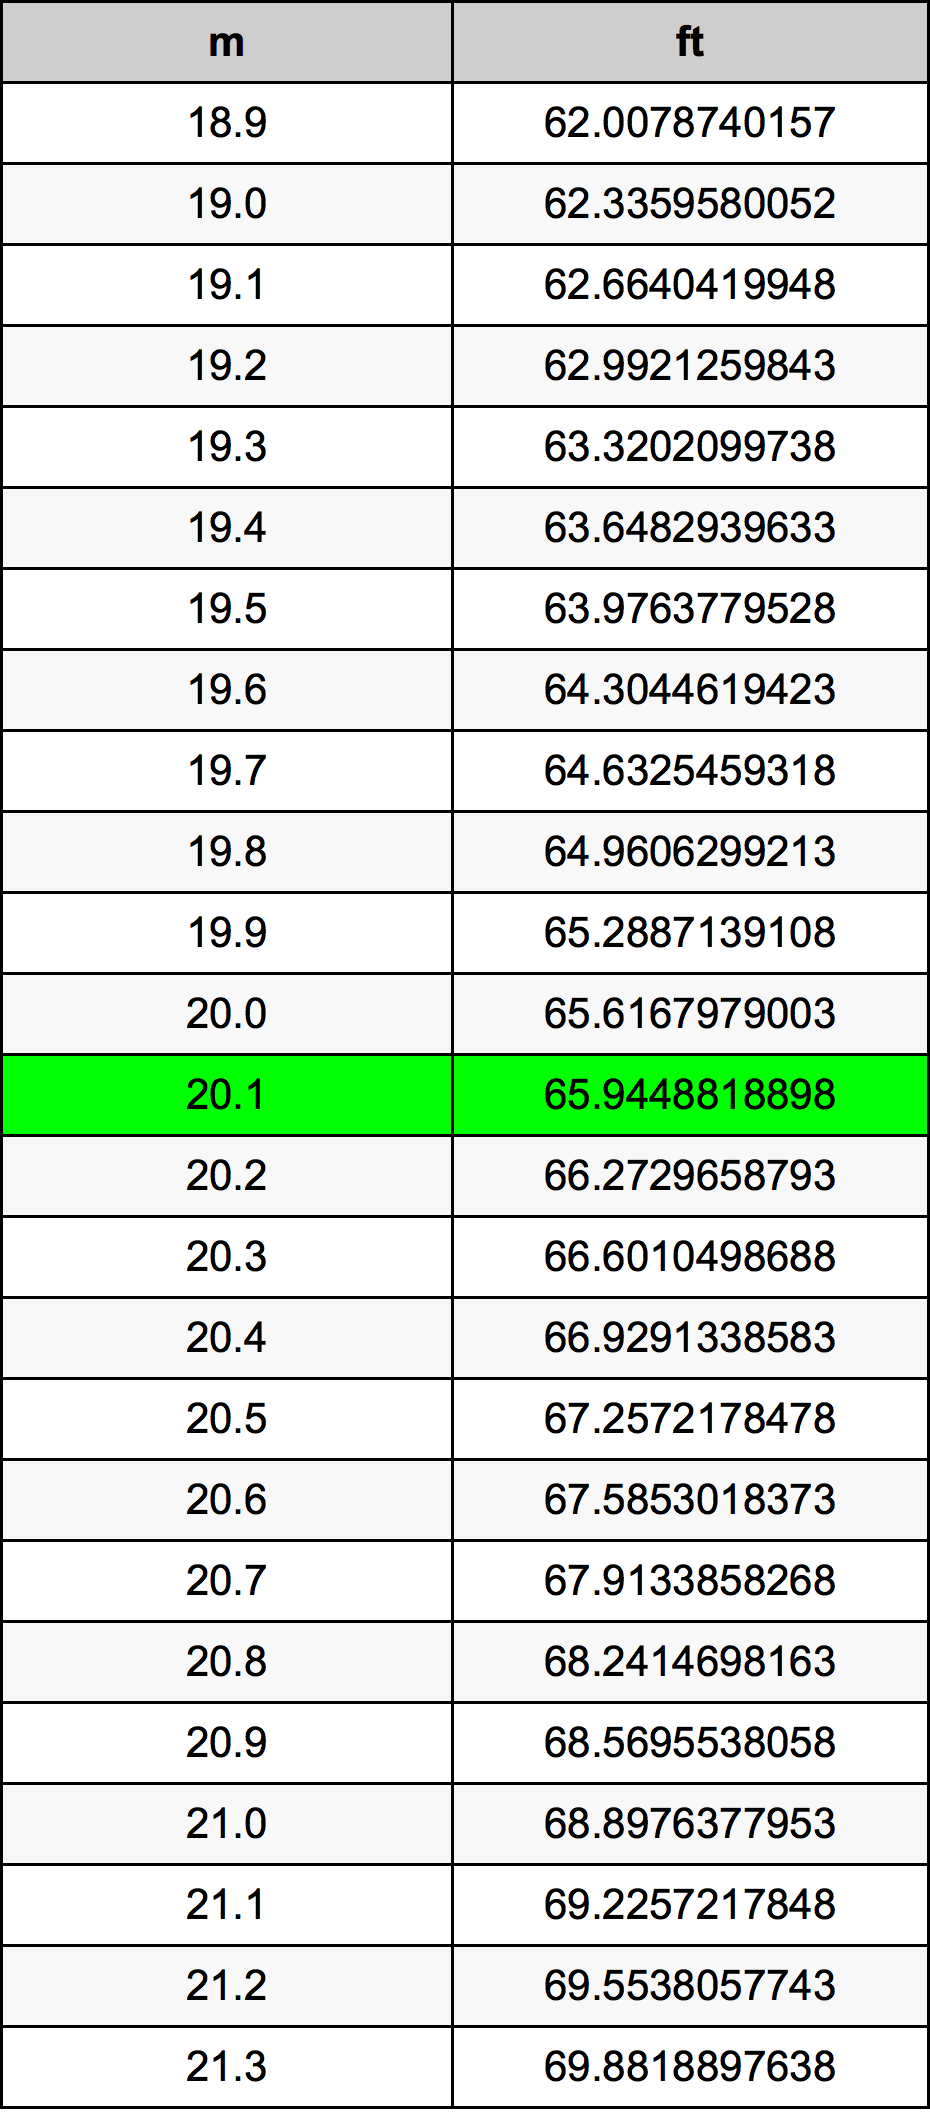 20.1 Metru tabelul de conversie